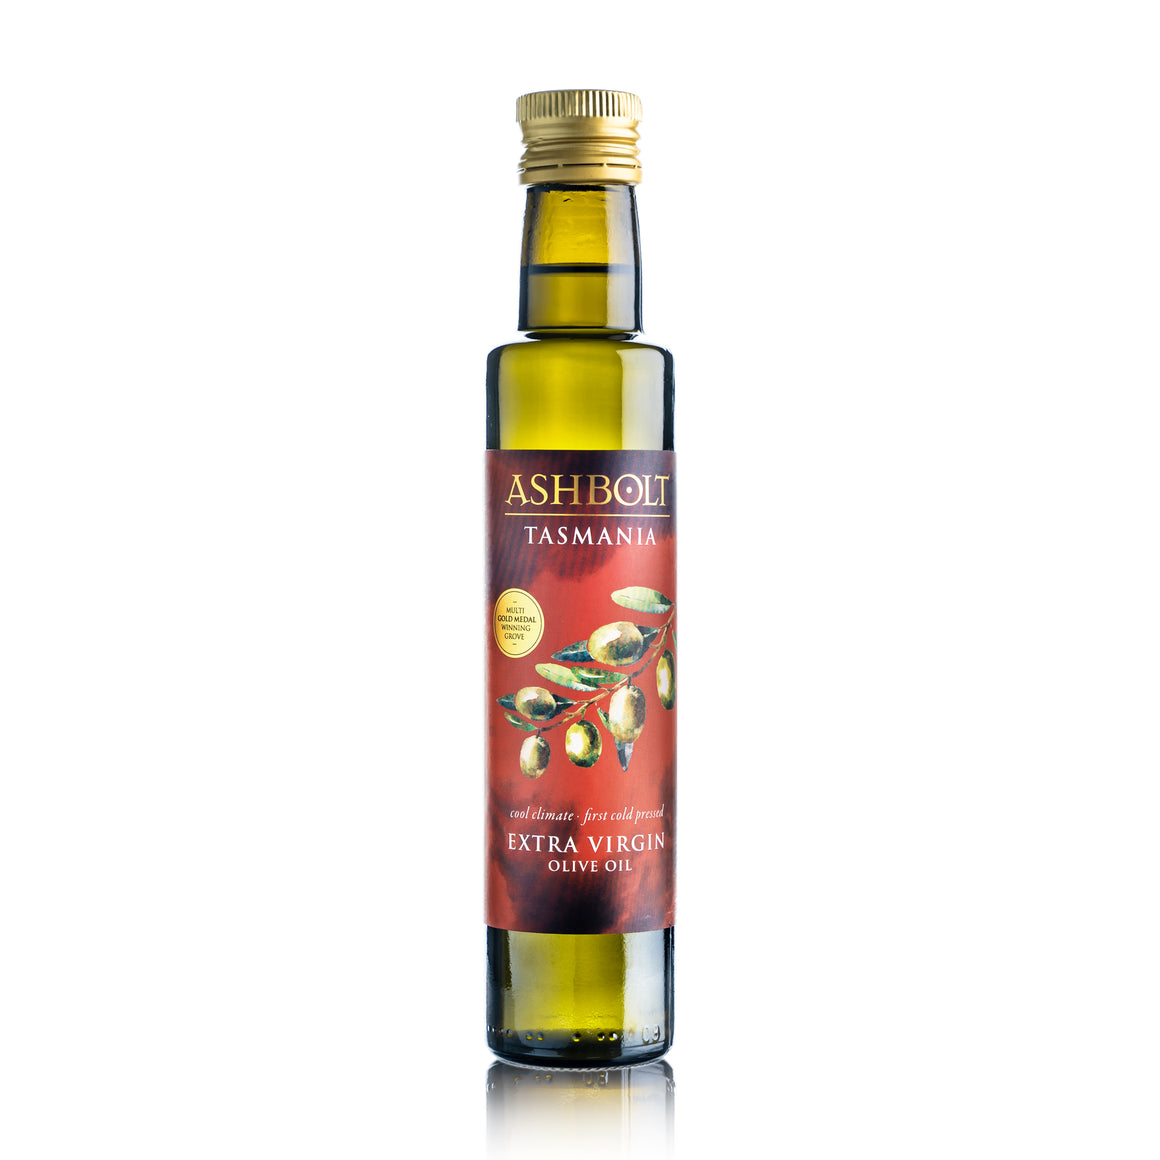 Two Lemon Agrumato and Extra virgin Olive oil bottles